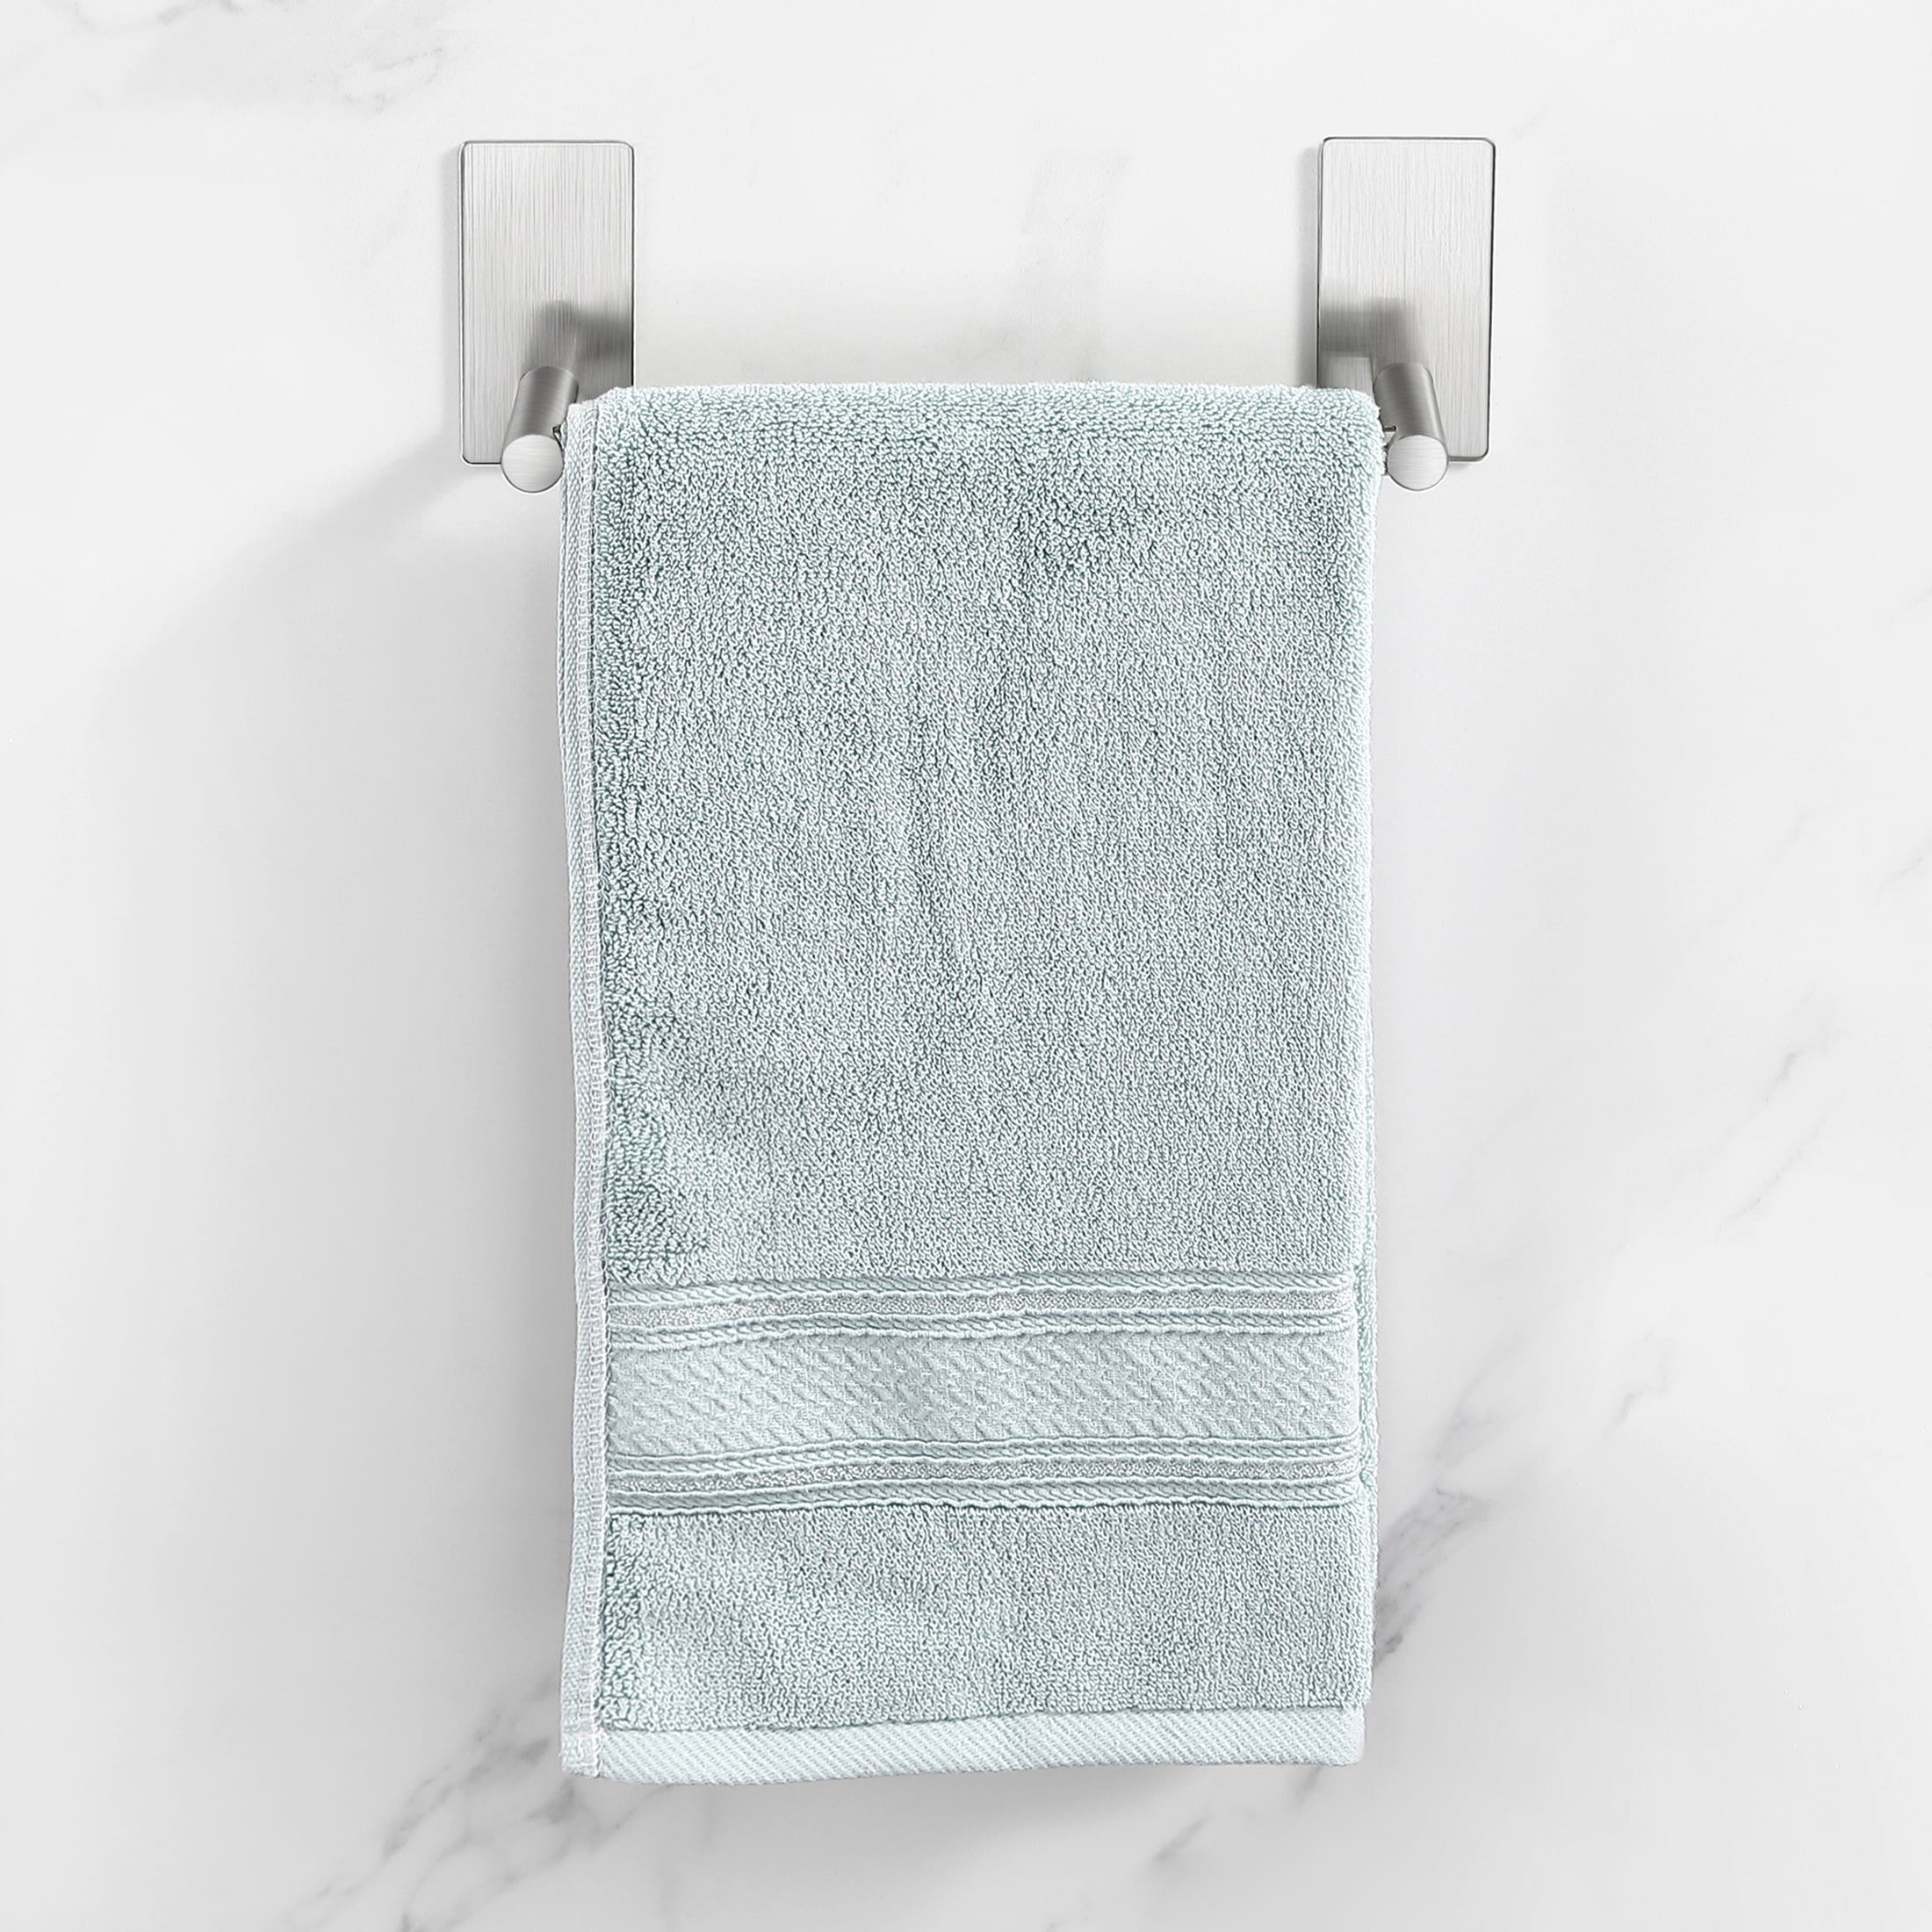 KK5 Bathroom Towel Rack Shelves Set of 6 - Foldable Towel Holder with Towel  Bar & 9 Hooks for Shower Room Organizer Bathroom Storage Kitchen Towels